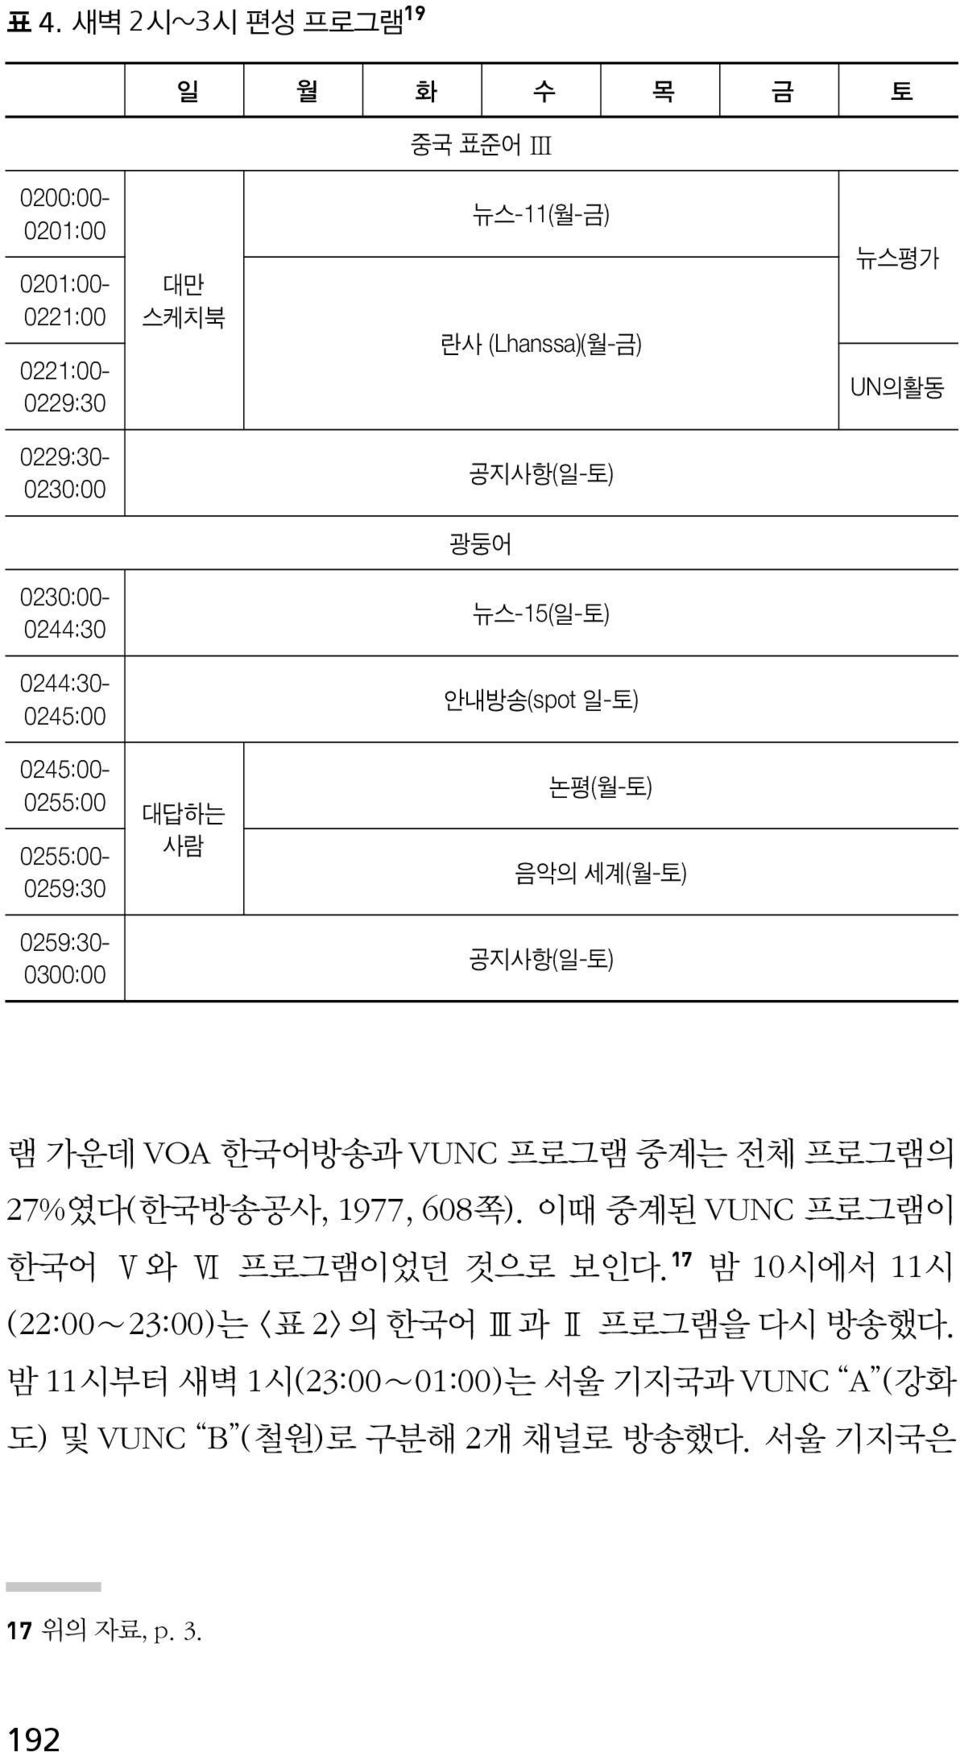 0259:30-0300:00 공지사항(일-토) 램 가운데 VOA 한국어방송과 VUNC 프로그램 중계는 전체 프로그램의 27%였다(한국방송공사, 1977, 608쪽). 이때 중계된 VUNC 프로그램이 한국어 Ⅴ와 Ⅵ 프로그램이었던 것으로 보인다.